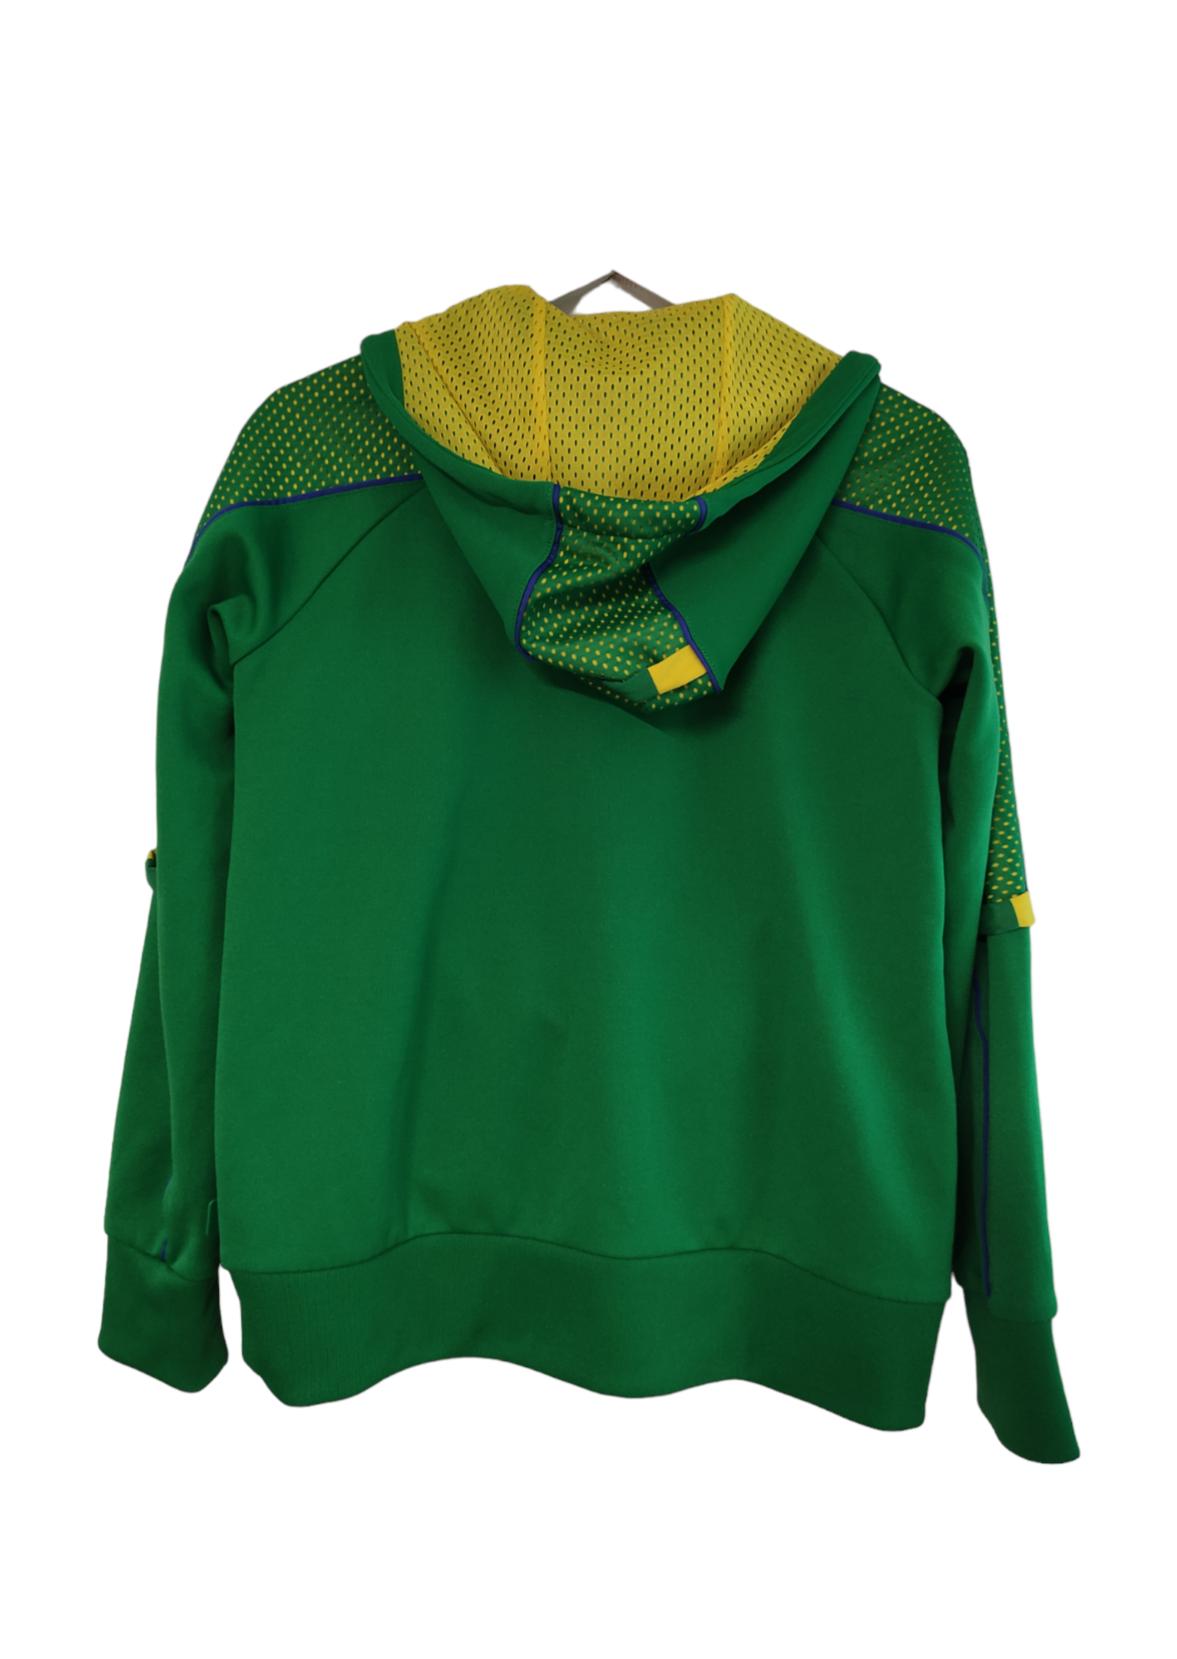 Γυναικεία Αθλητική Μπλούζα ADIDAS σε Πράσινο - Κίτρινο χρώμα (Medium)